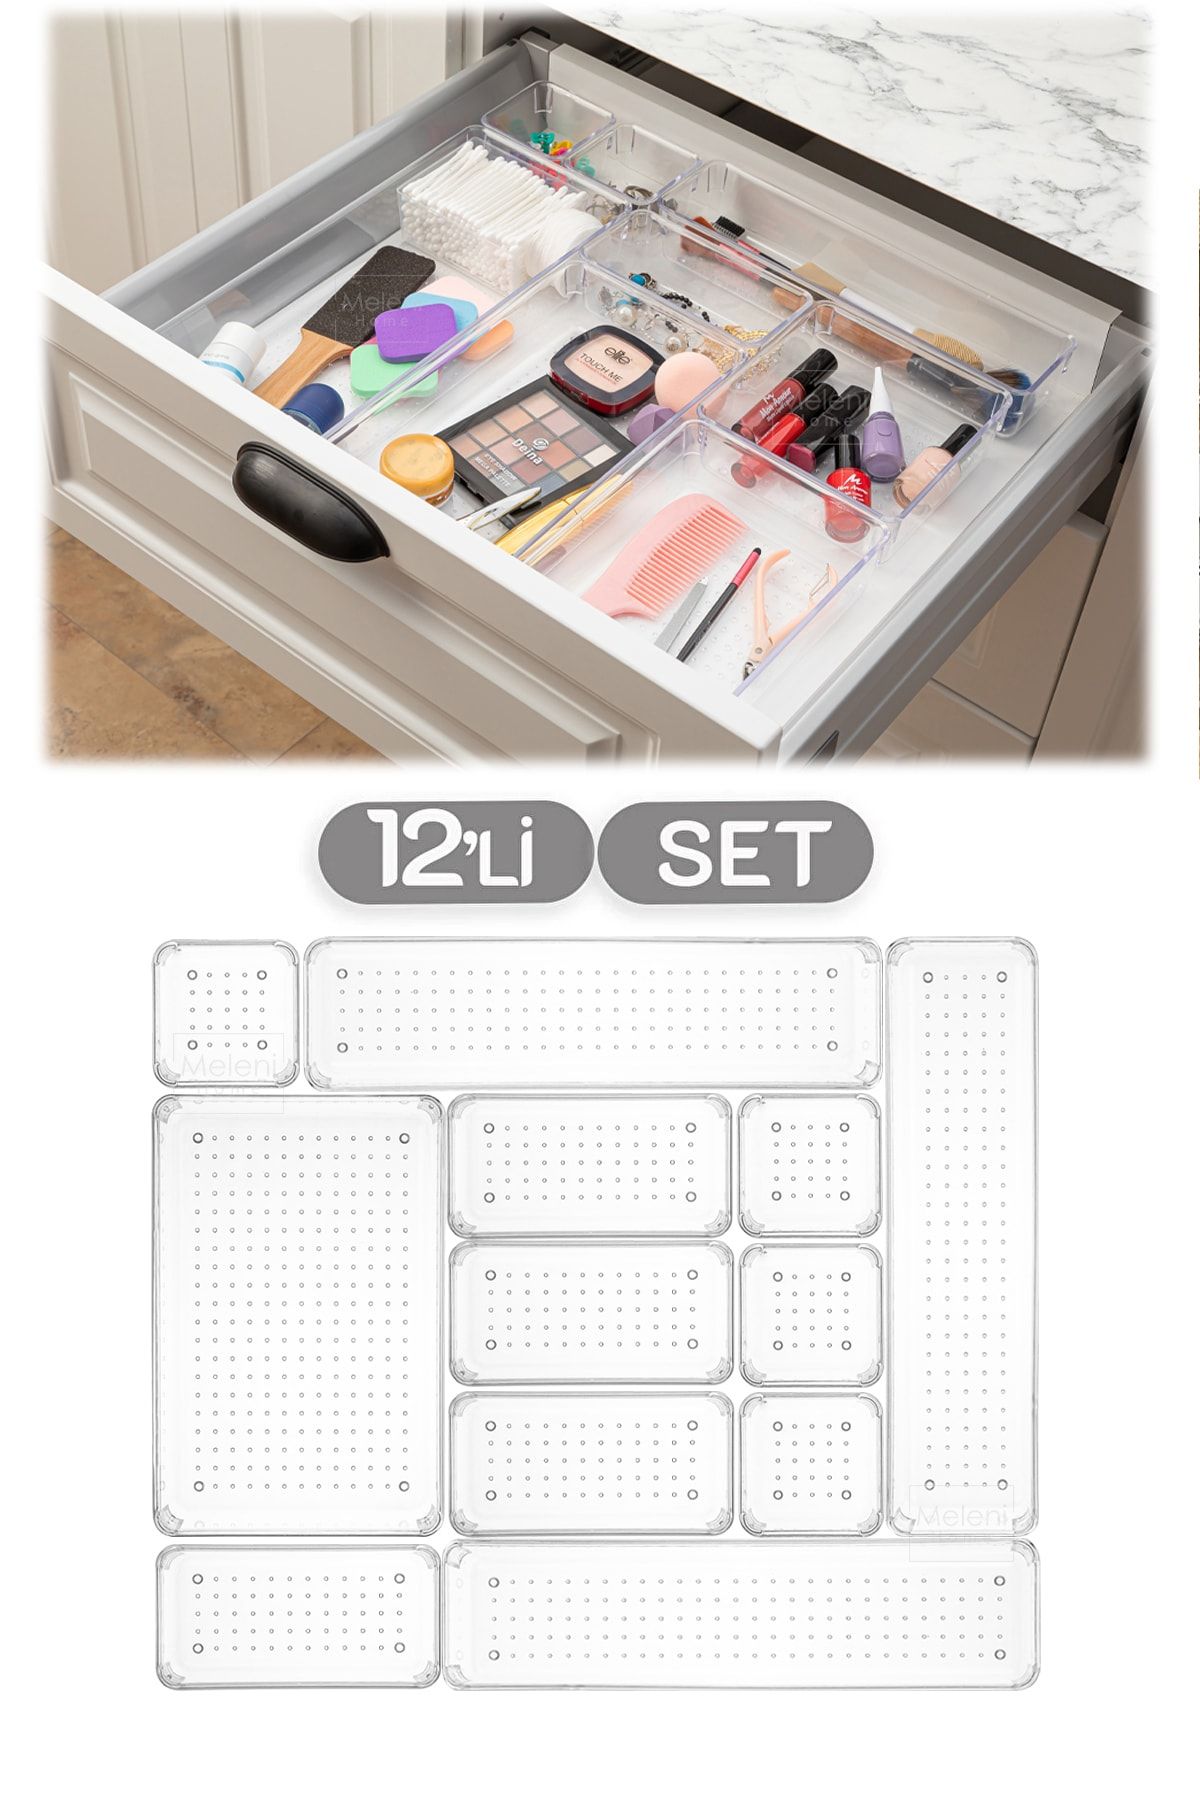 Meleni Home 12'li Set Modüler Çekmece Içi Düzenleyici, Banyo Makyaj - Takı Düzenleyici - Ofis Masaüstü Organizer